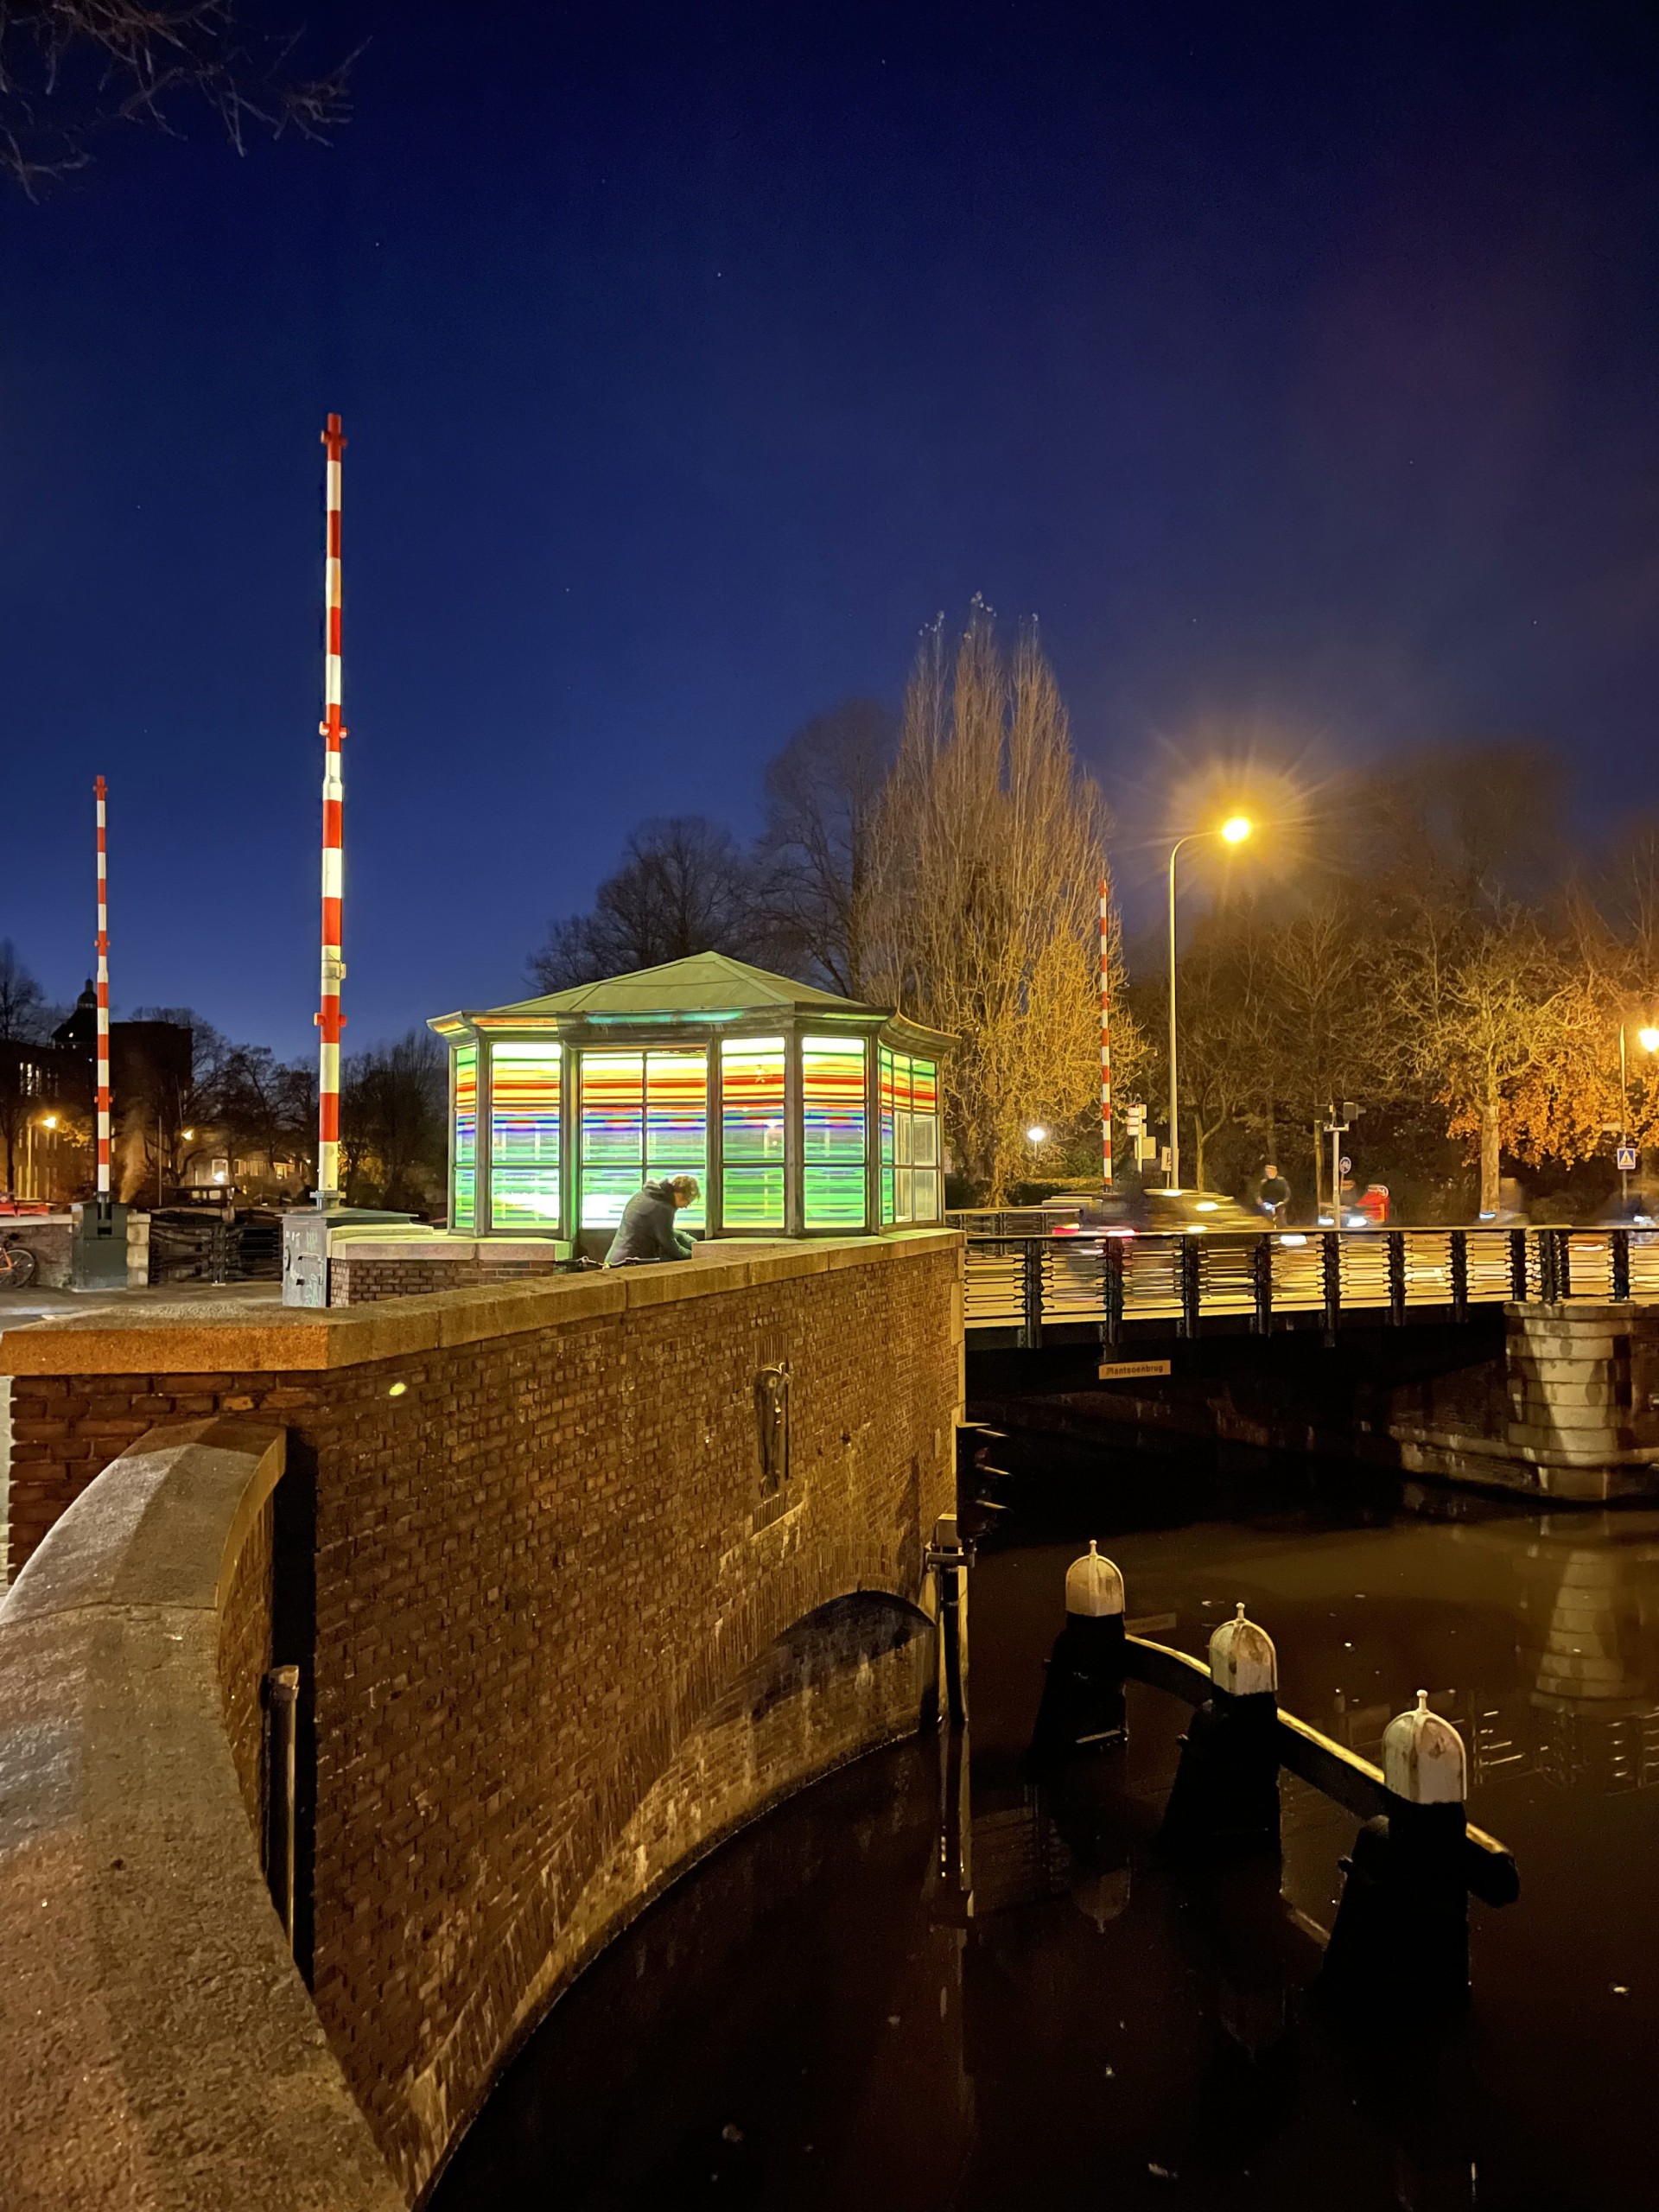 Brugwachtershuisje Groningen verlicht met gekleurde transparante plakfolie als een lampion.